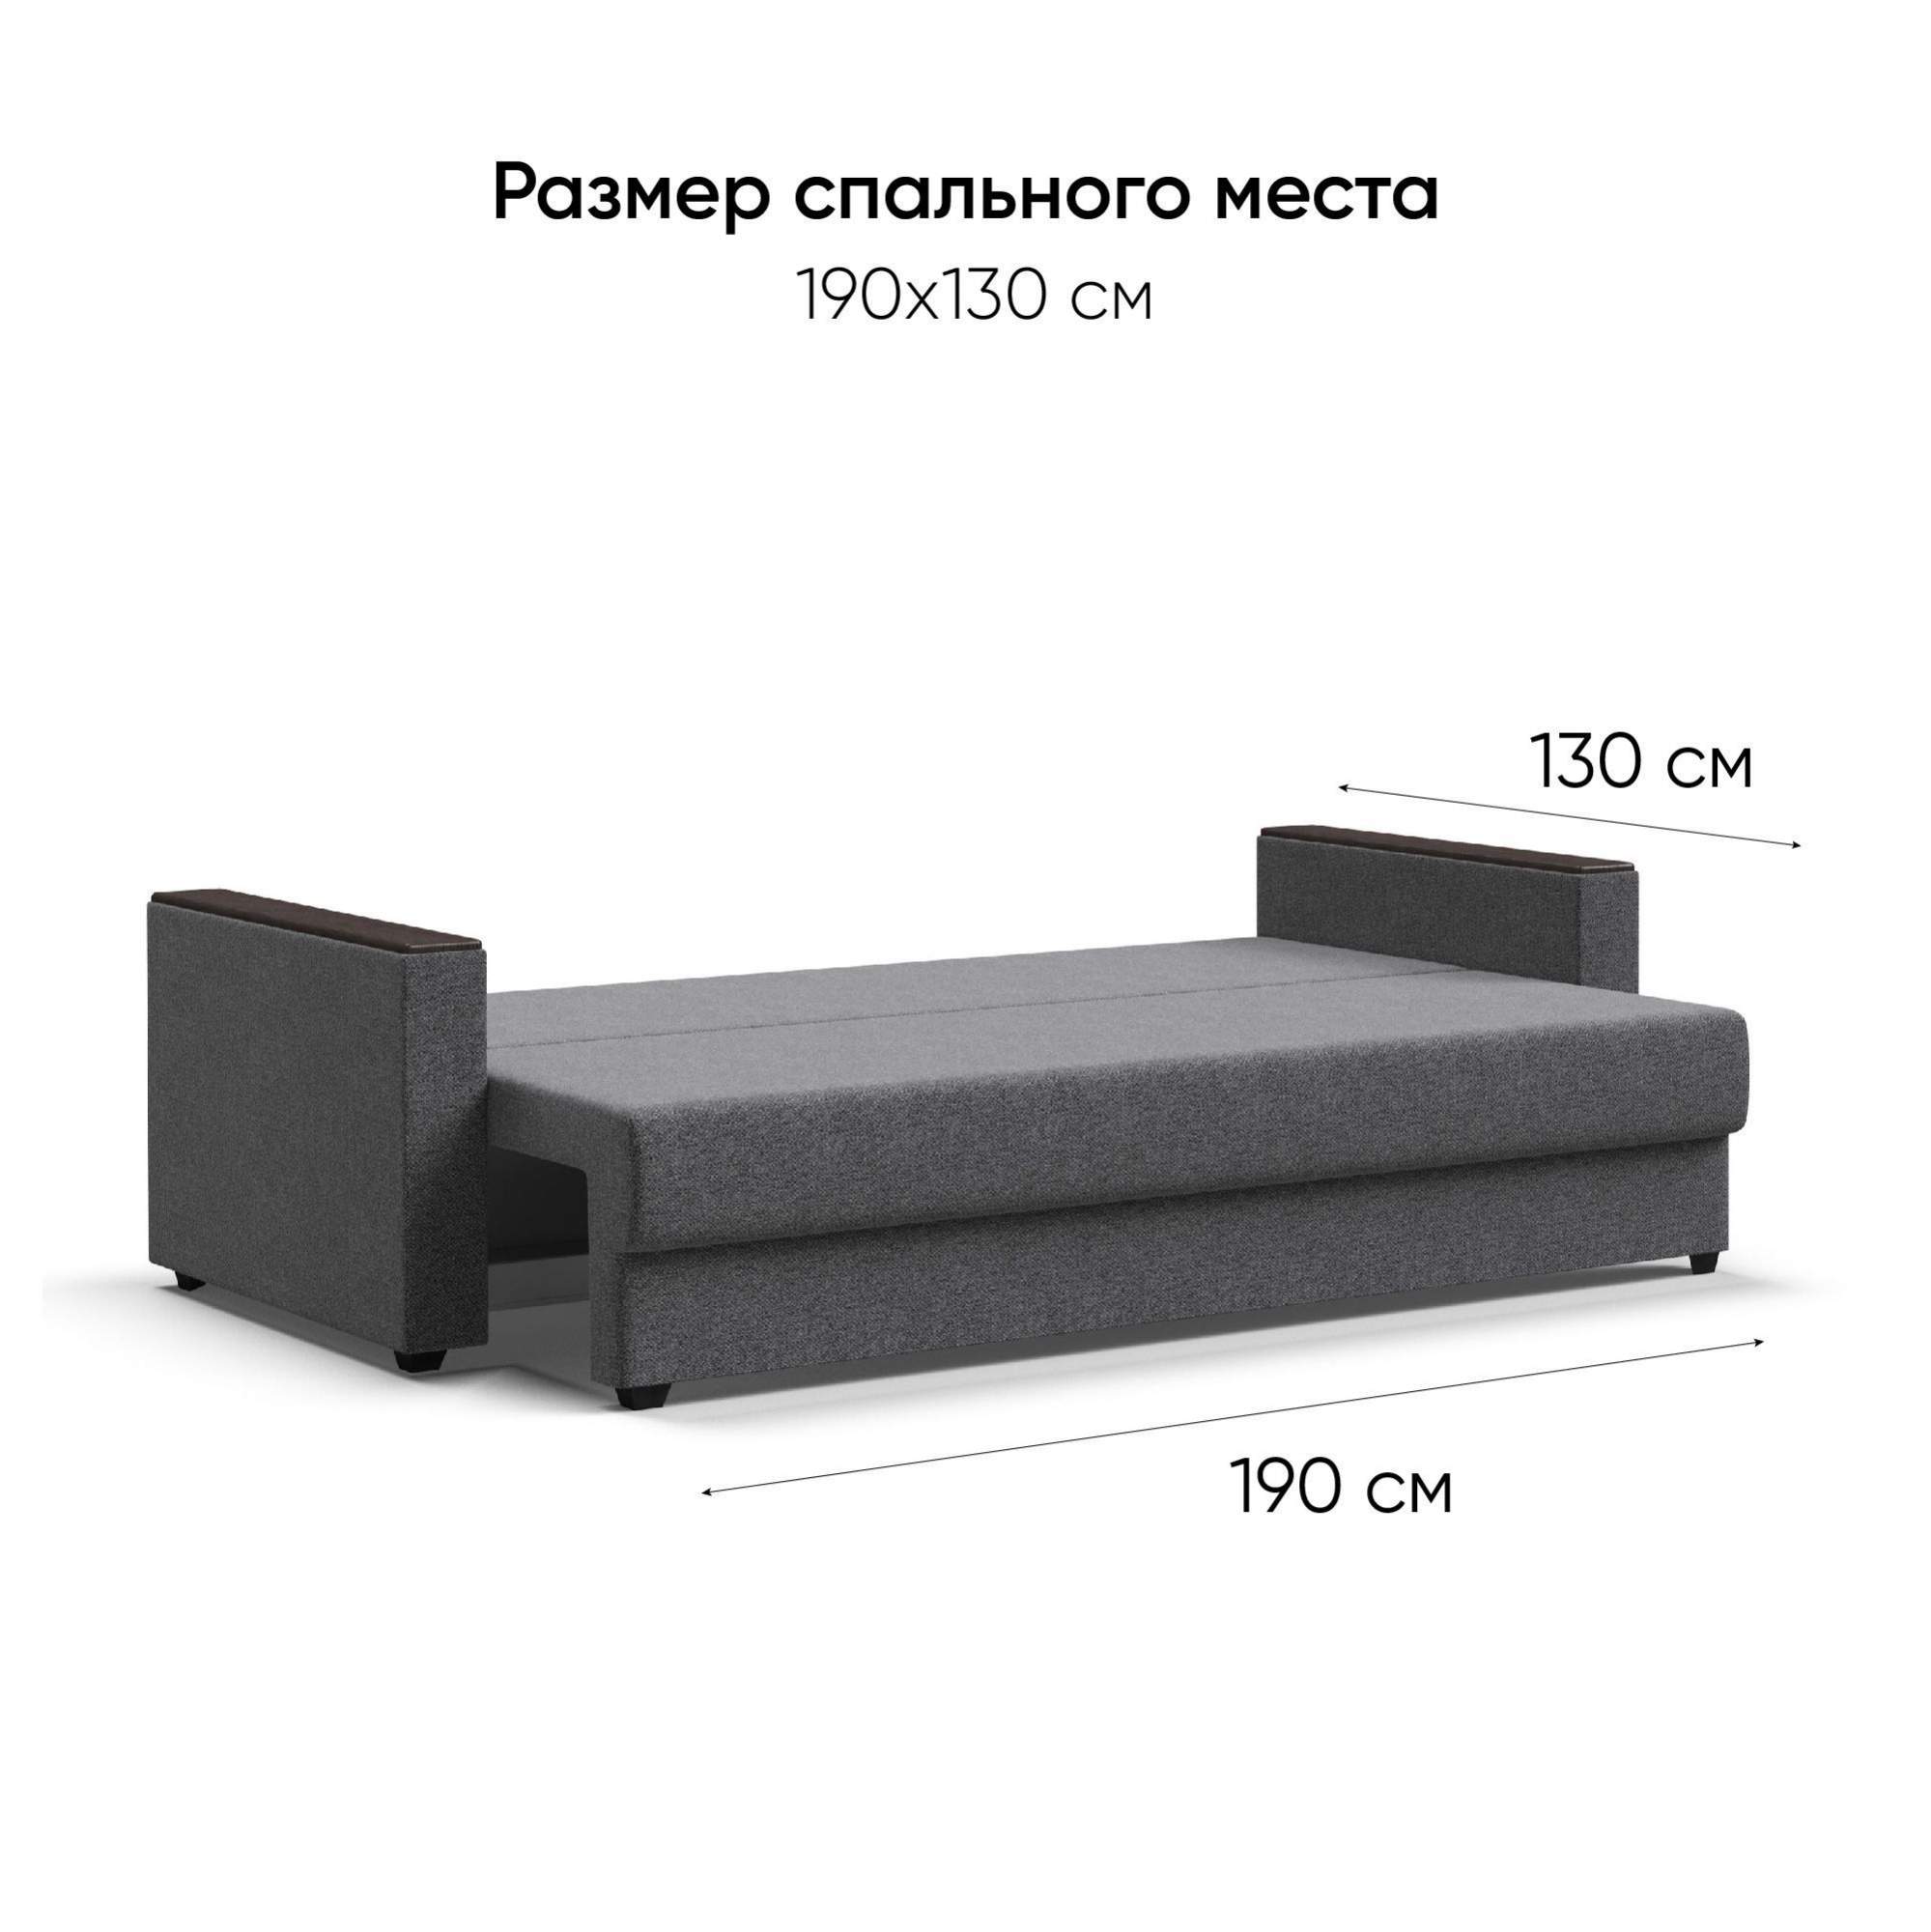 Диван-кровать Много Мебели Атланта Люкс, с ящиком, еврокнижка, рогожкаMalmo серый - купить в Москве, цены на Мега��аркет